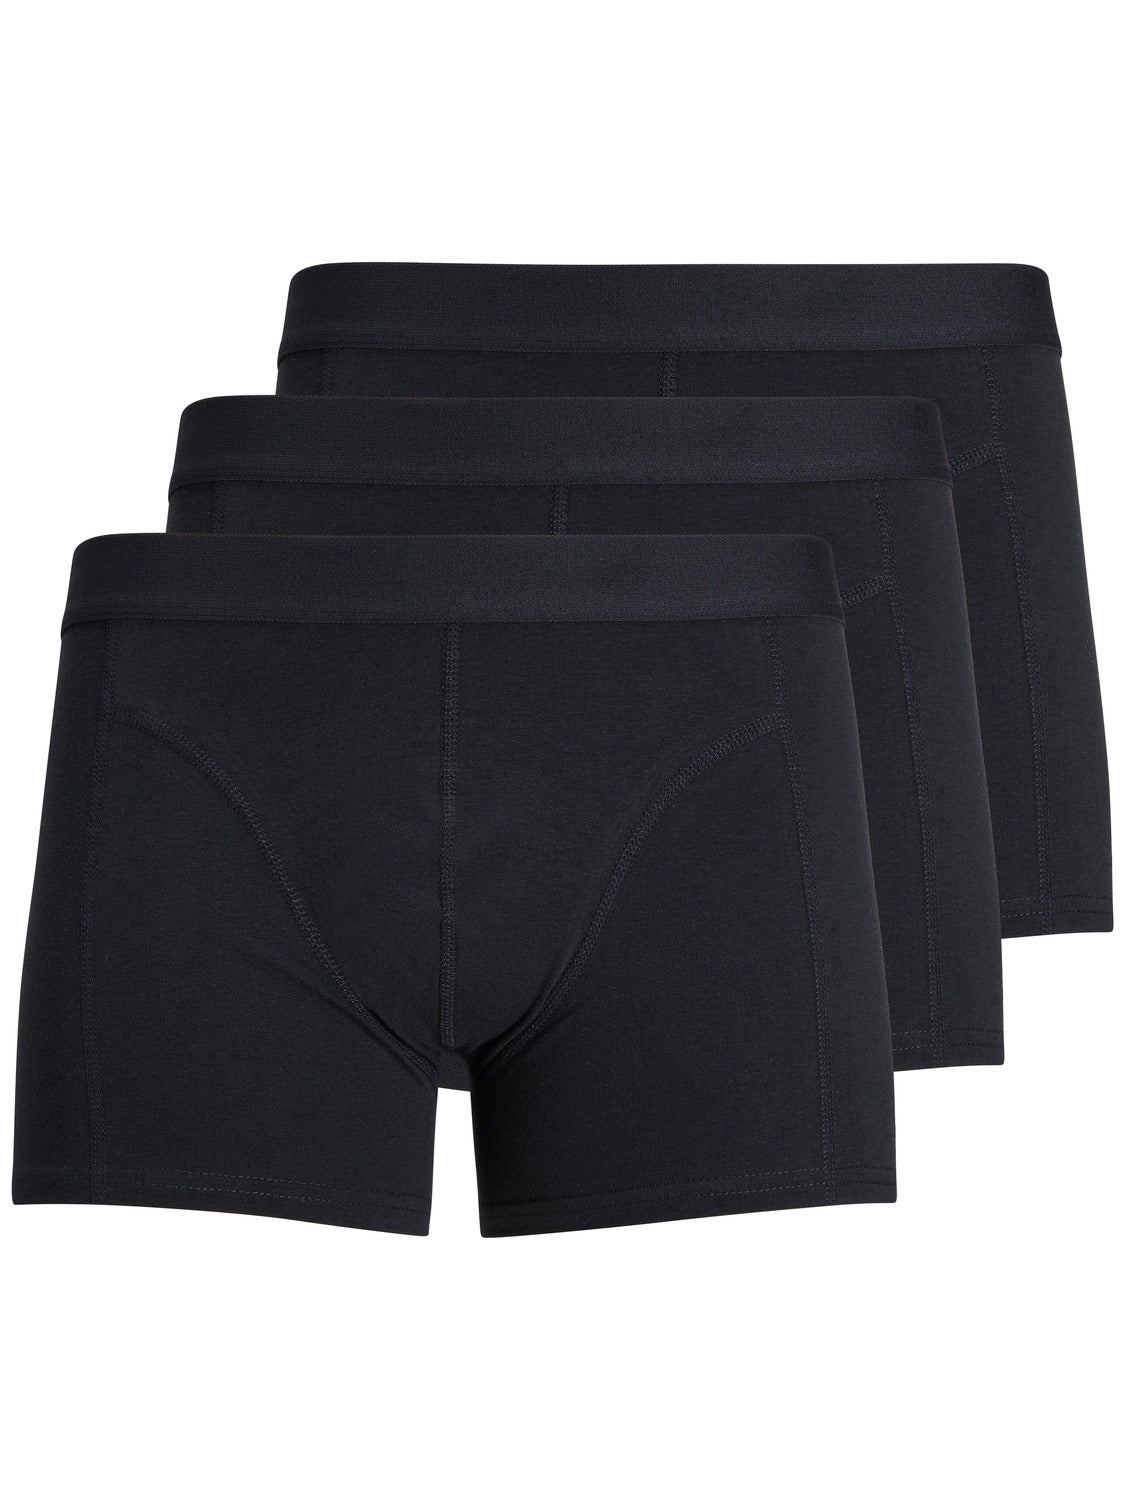 Jack & Jones sens Nouveau Boxer Trunks Shorts Sous-vêtements noir taille S 